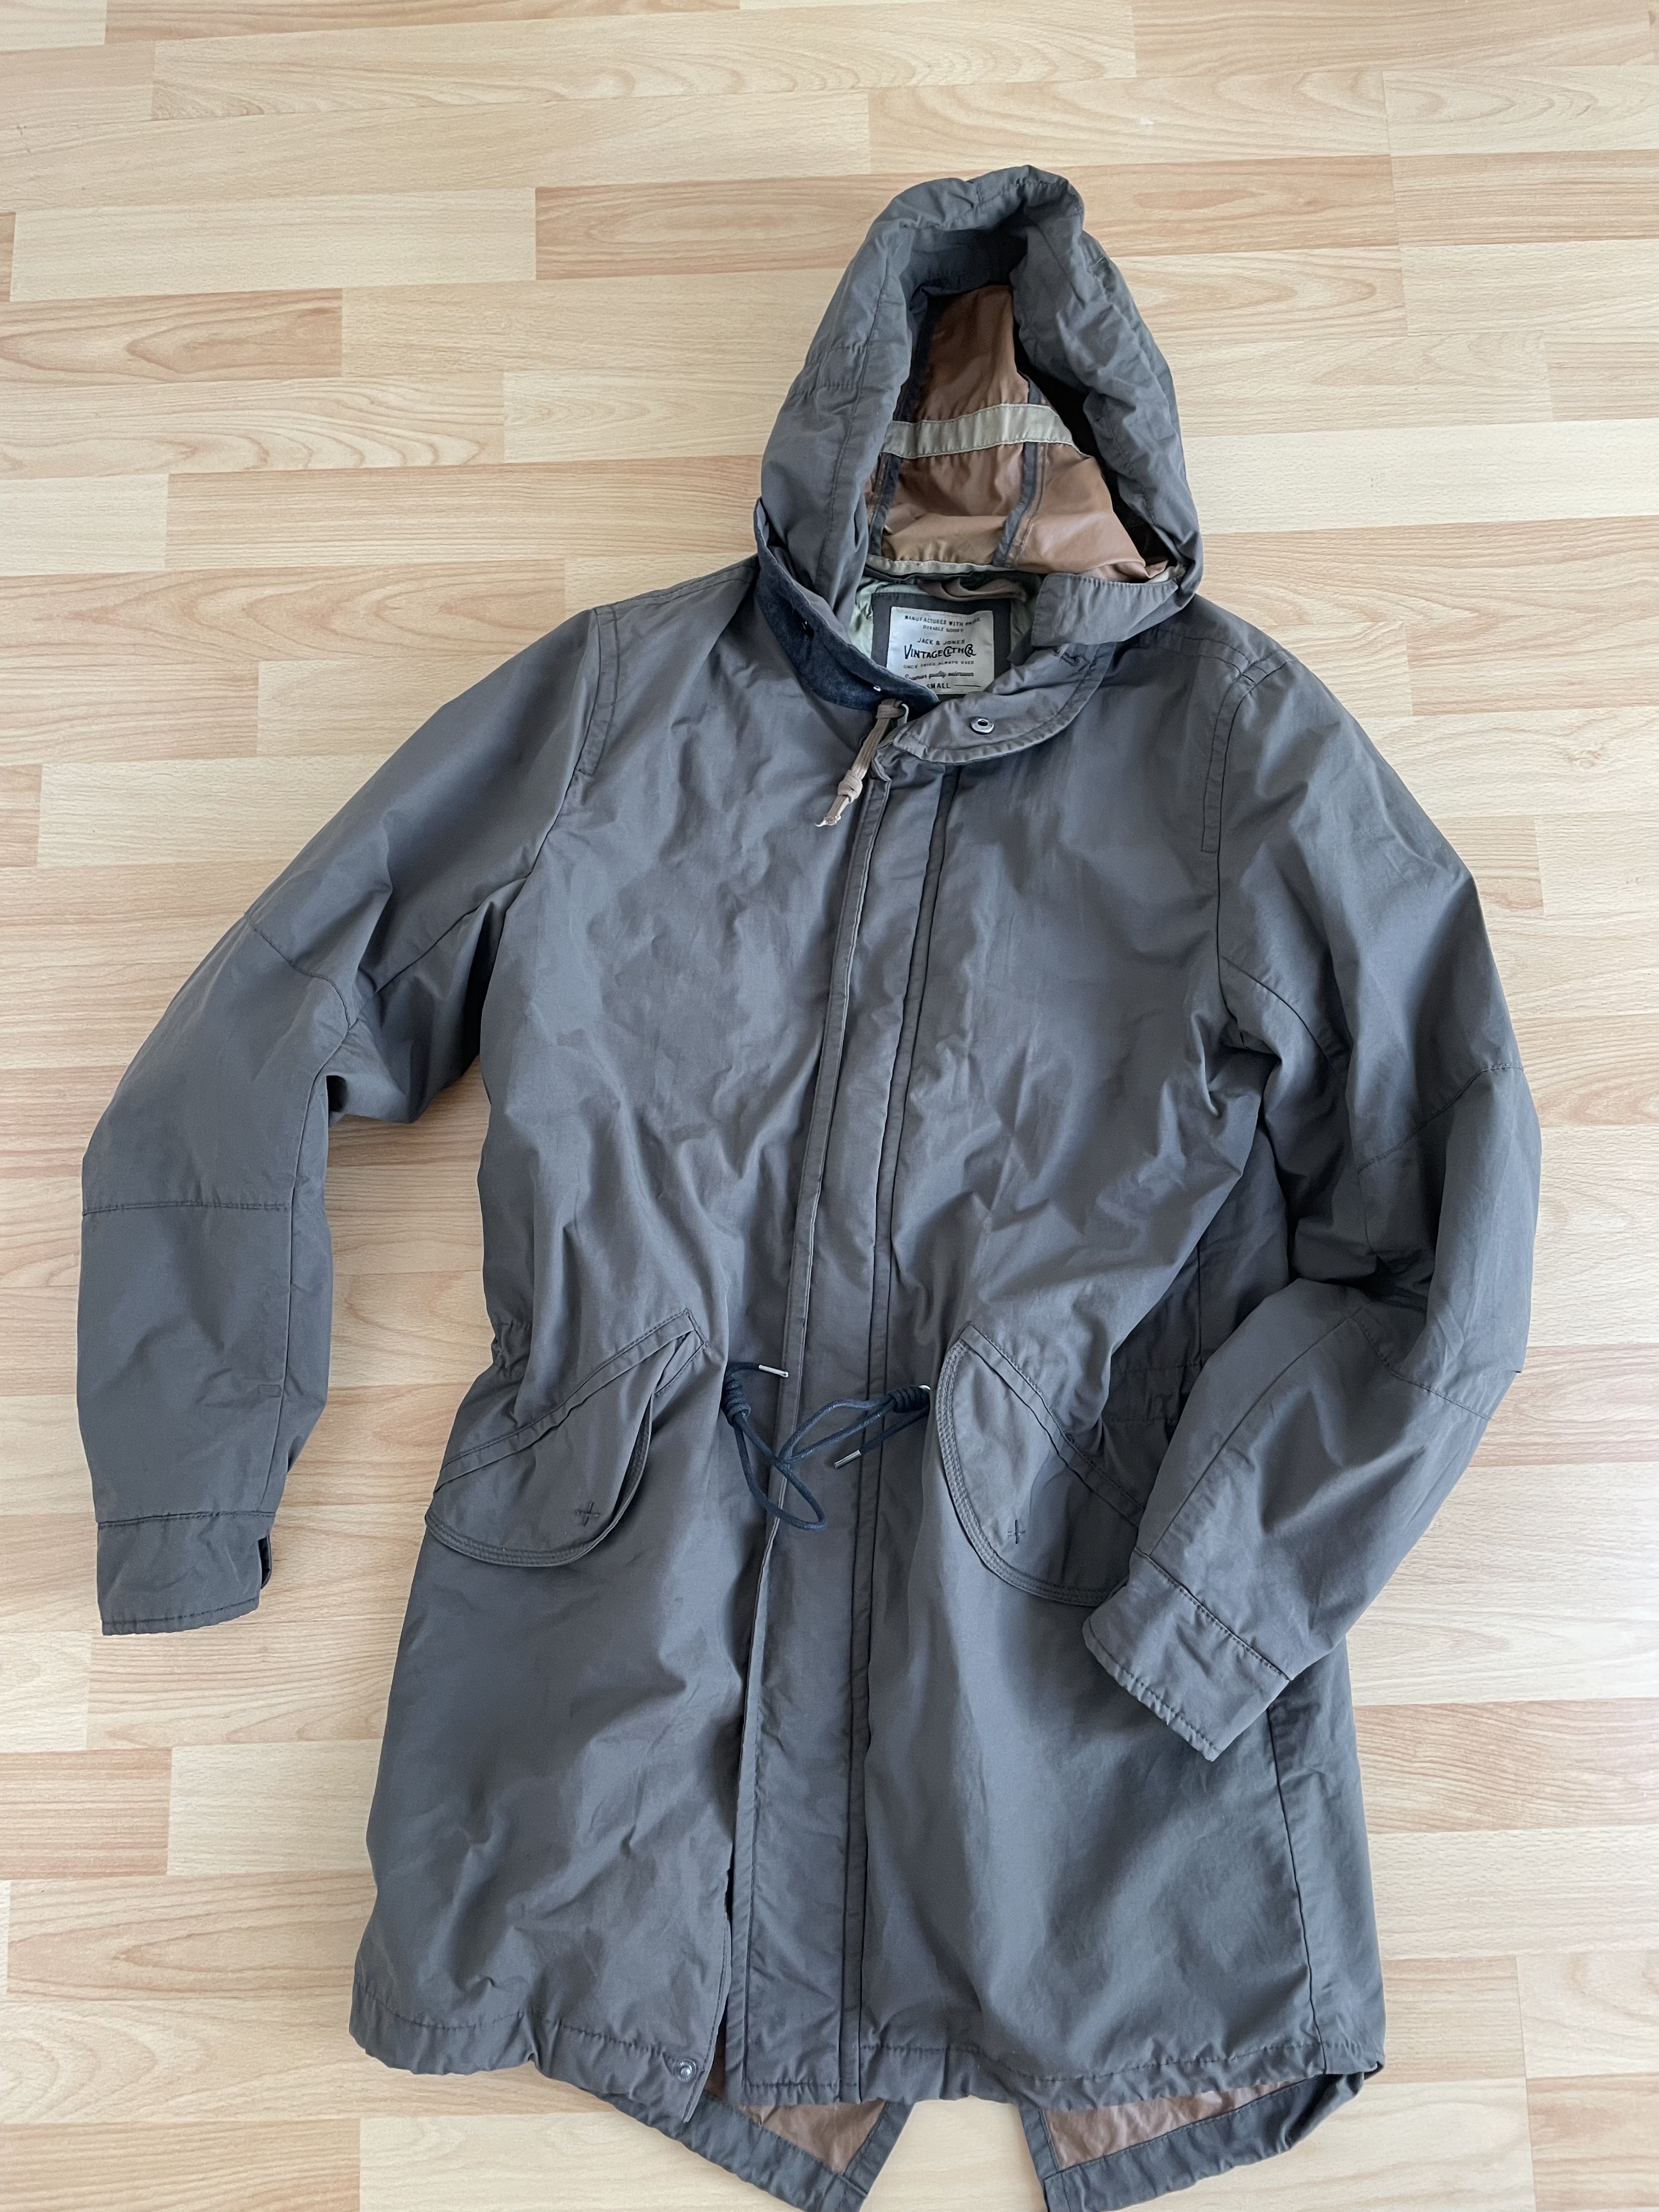 Rain jacket/ transitional jacket